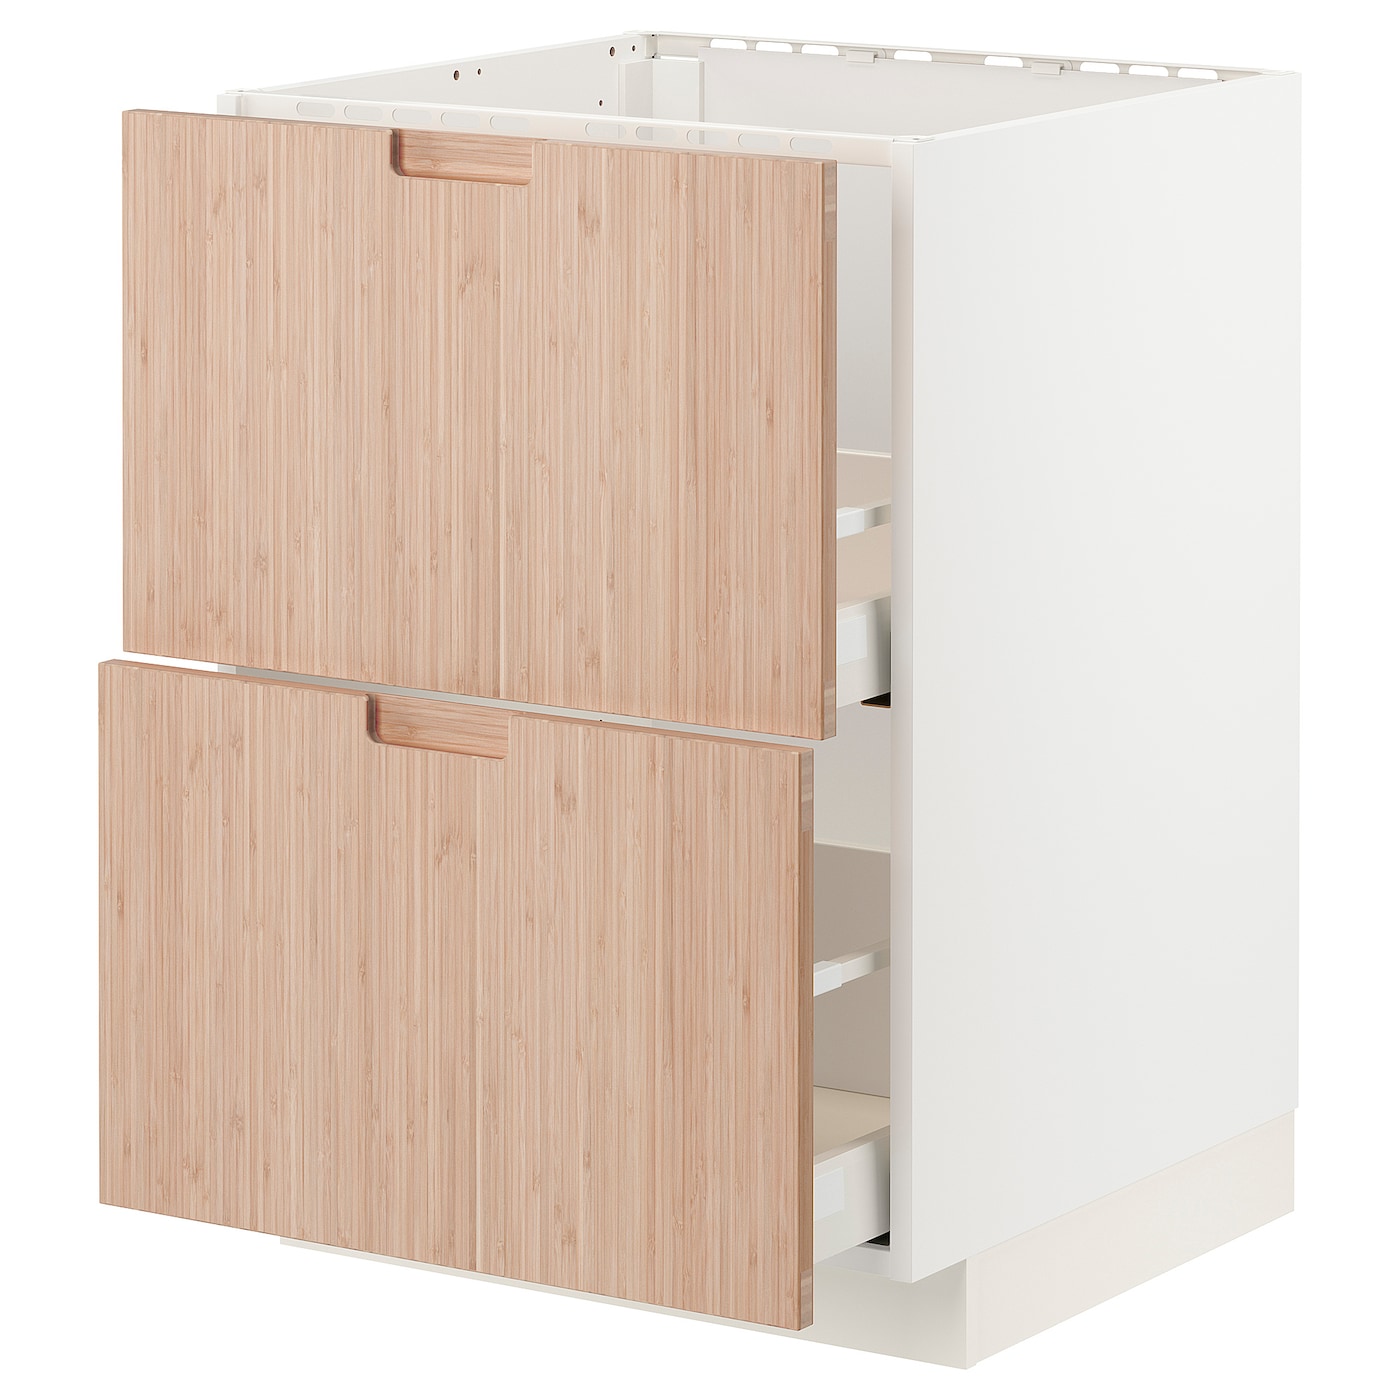 Напольный кухонный шкаф  - IKEA METOD MAXIMERA, 88x62x60см, белый/светлый бамбук, МЕТОД МАКСИМЕРА ИКЕА